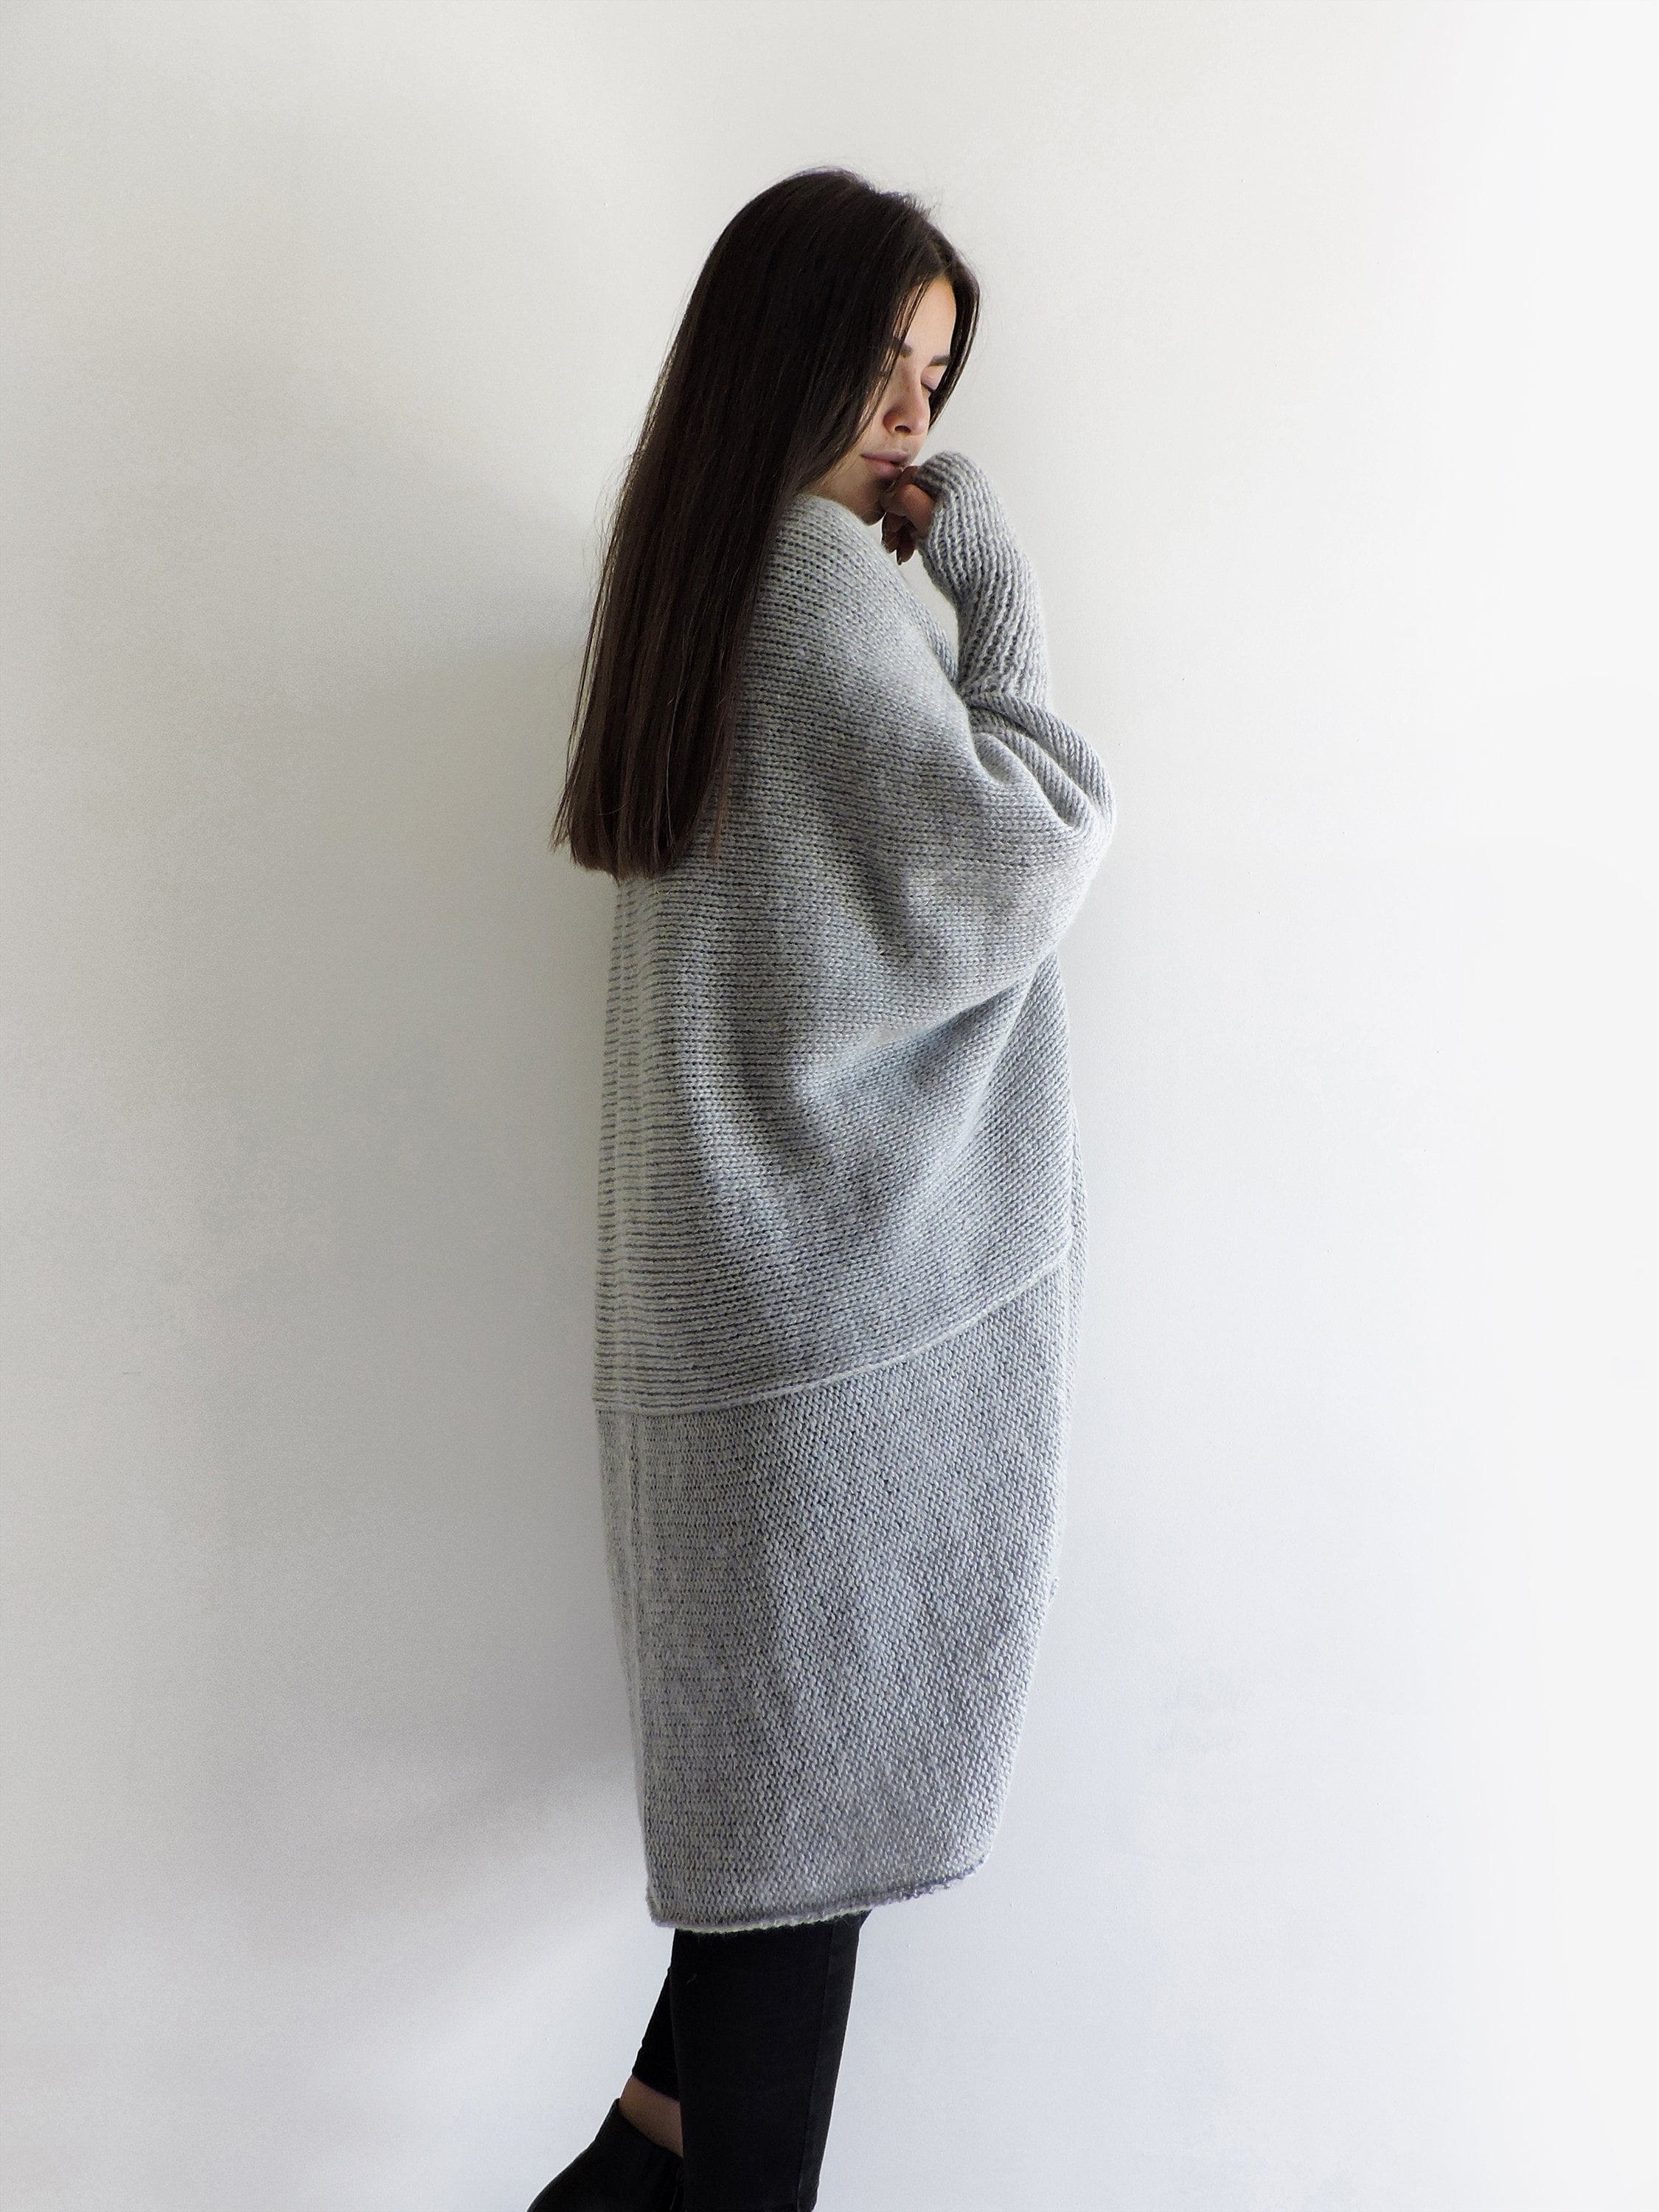 Women Knit Cardigan Plus Size Clothing Long Sweater Coat | Etsy